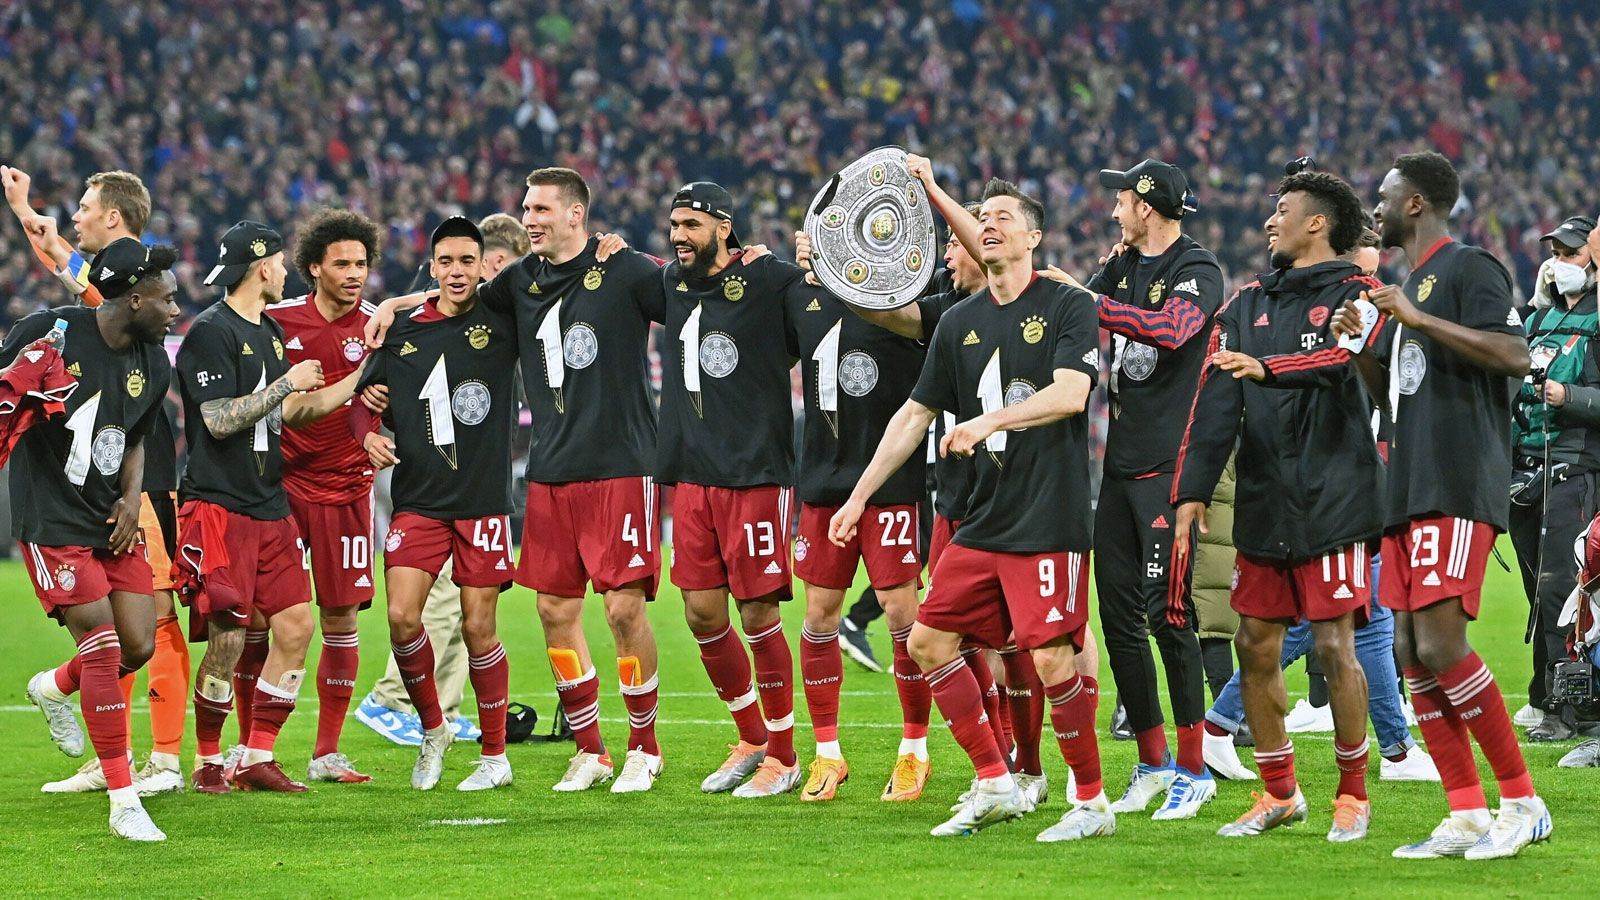 
                <strong>Meisterfeier mit Schalen-Double</strong><br>
                Wie sich die Bilder doch gleichen: Im zehnten Jahr in Folge feiert die Mannschaft des FC Bayern München die Meisterschaft. Diesmal nach einem 3:1 über Borussia Dortmund am 31. Spieltag. Mit dabei neben eigens kreierten Shirts: ein Schalen-Double.
              